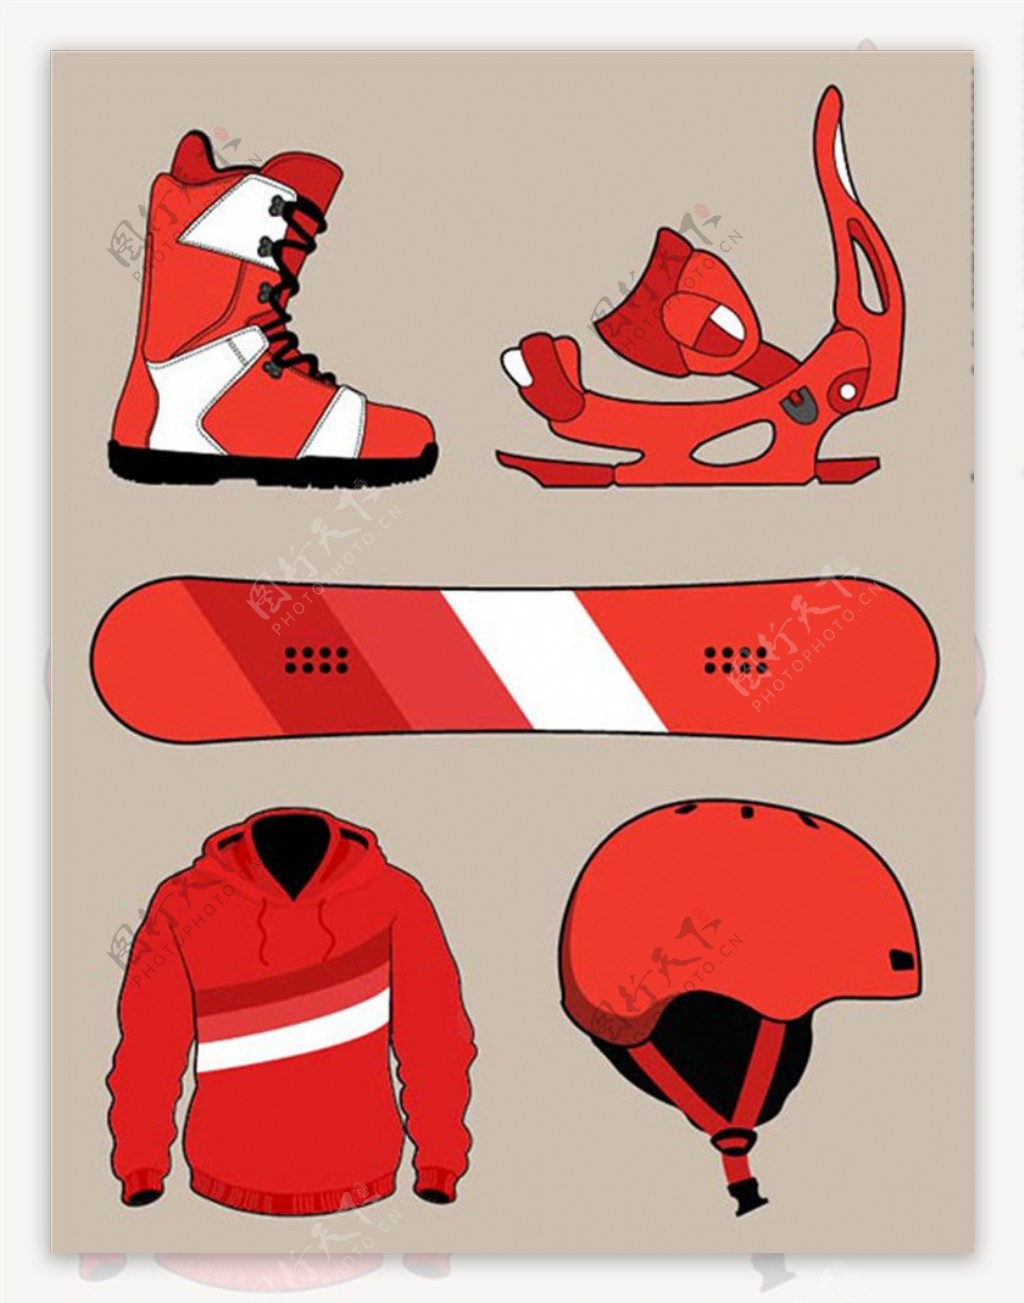 卡通红色滑雪配件元素